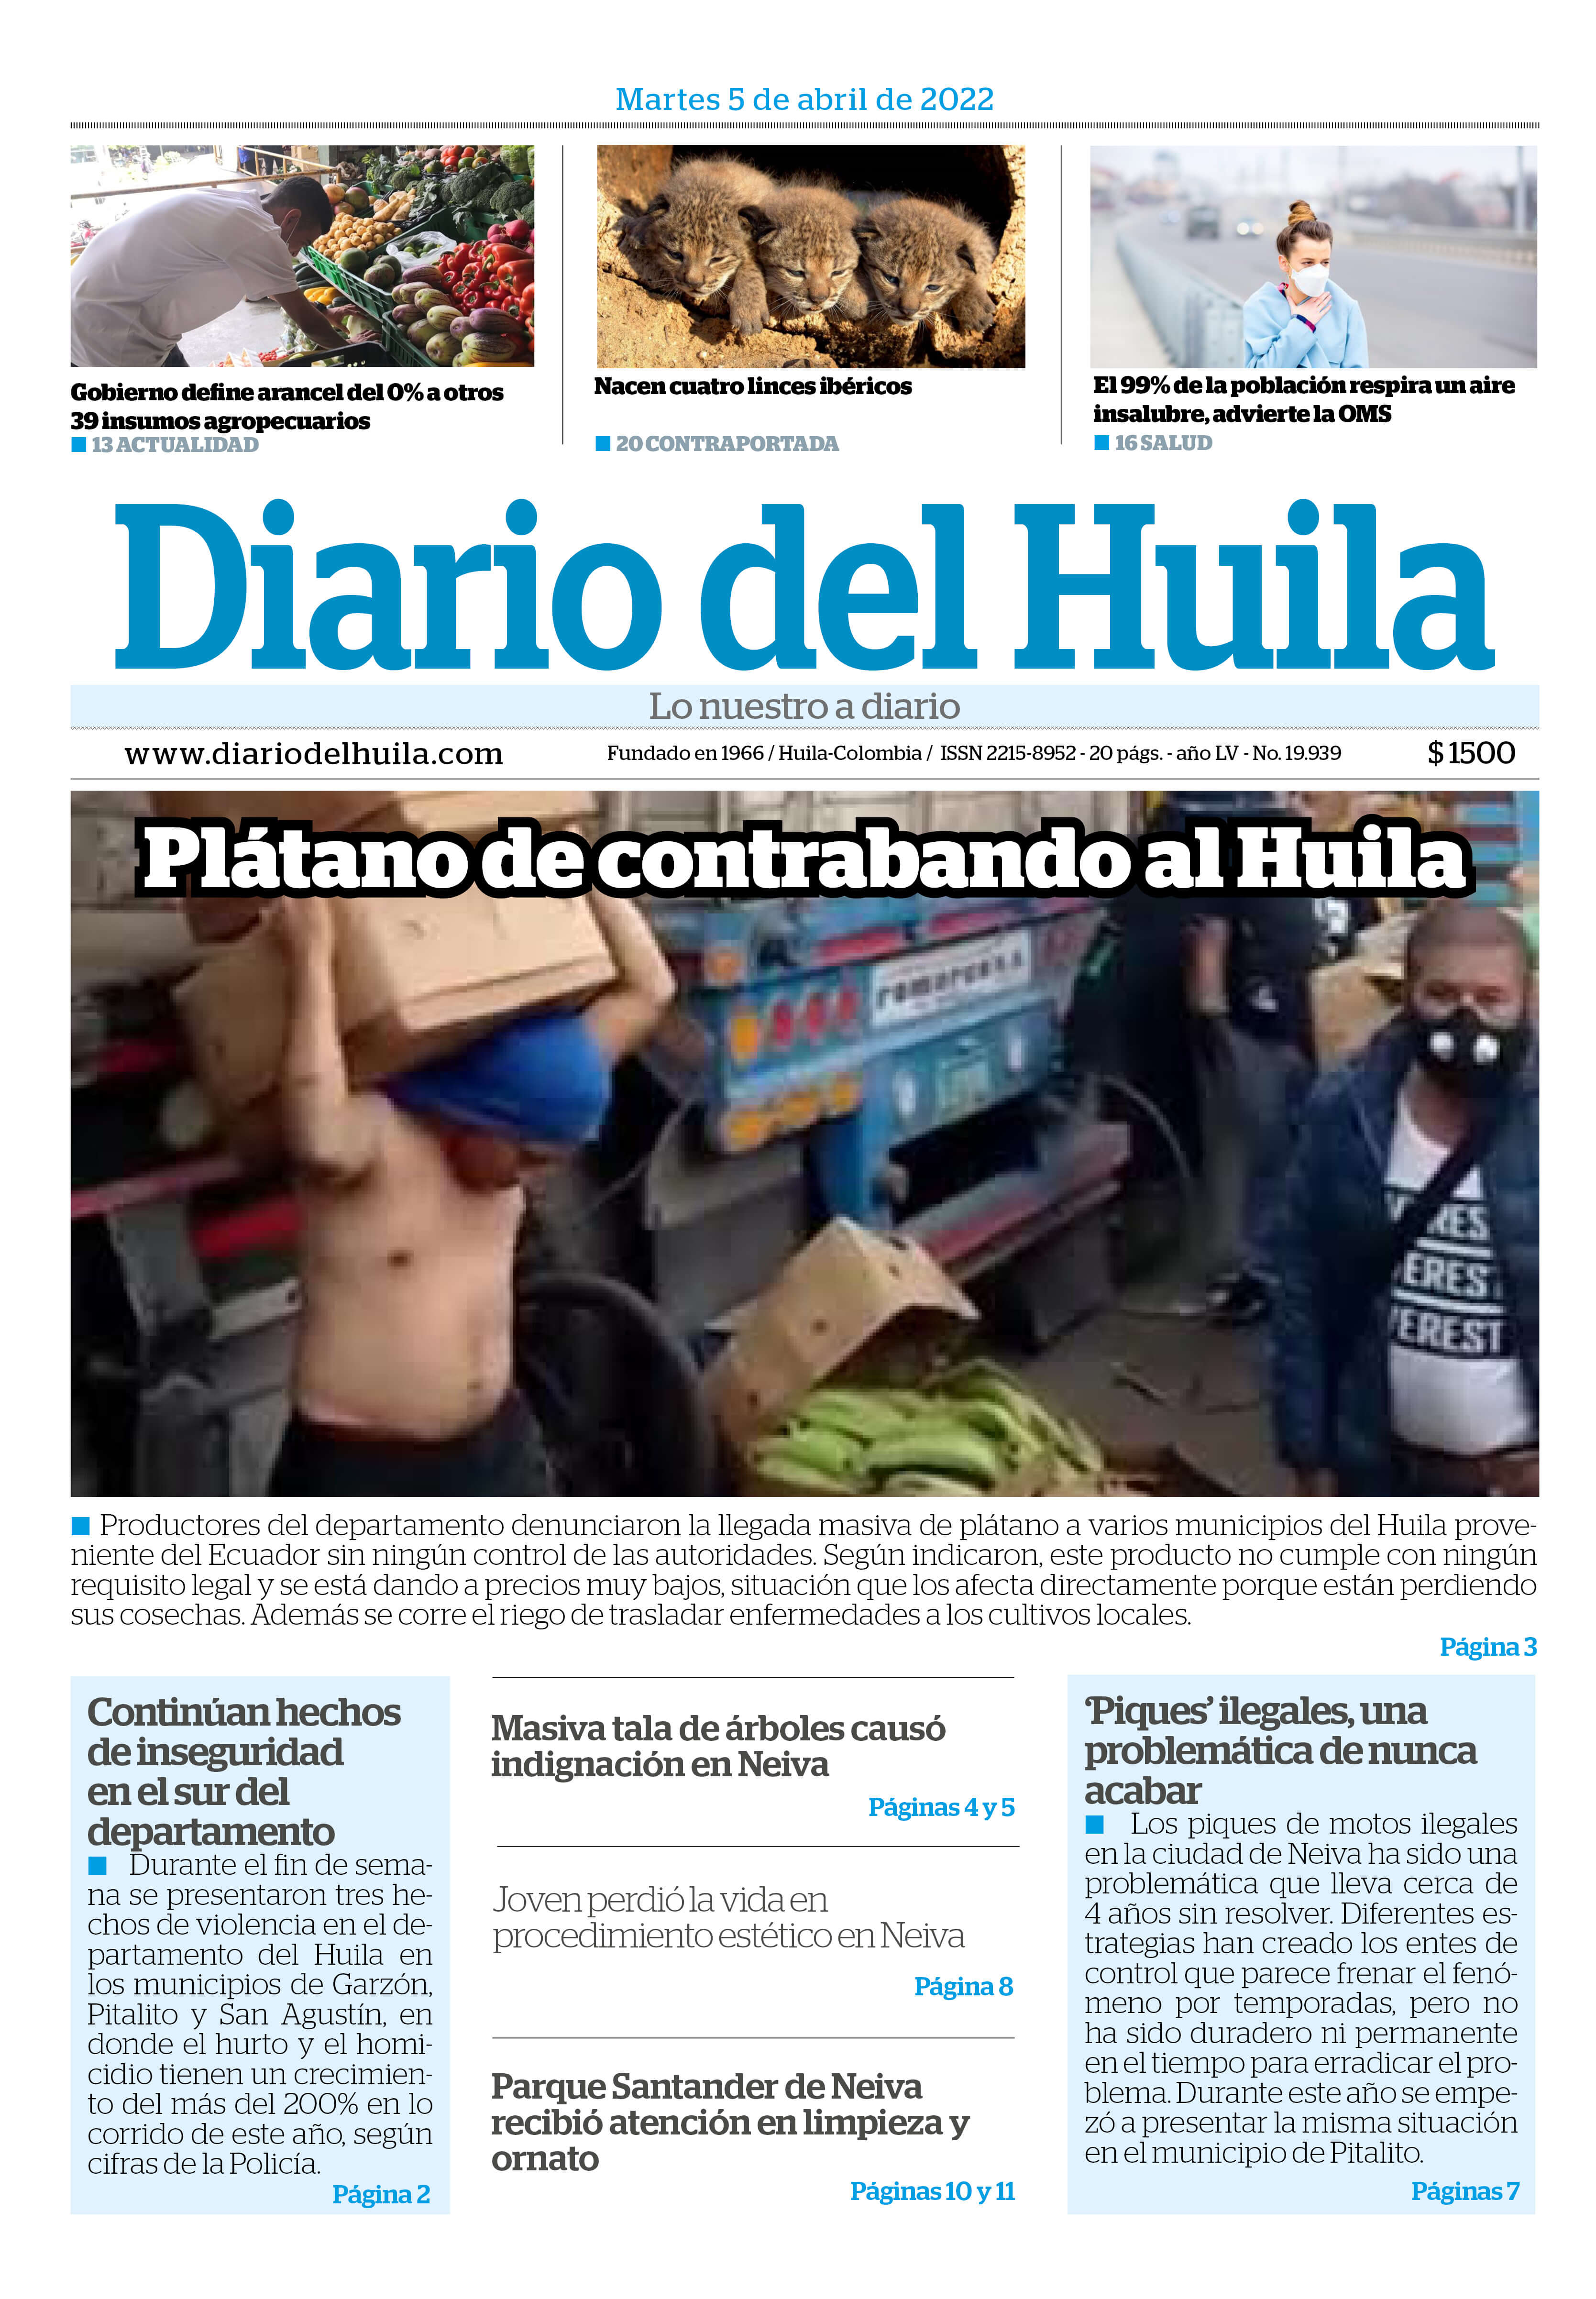 Diario del Huila 05 de abril de 2022